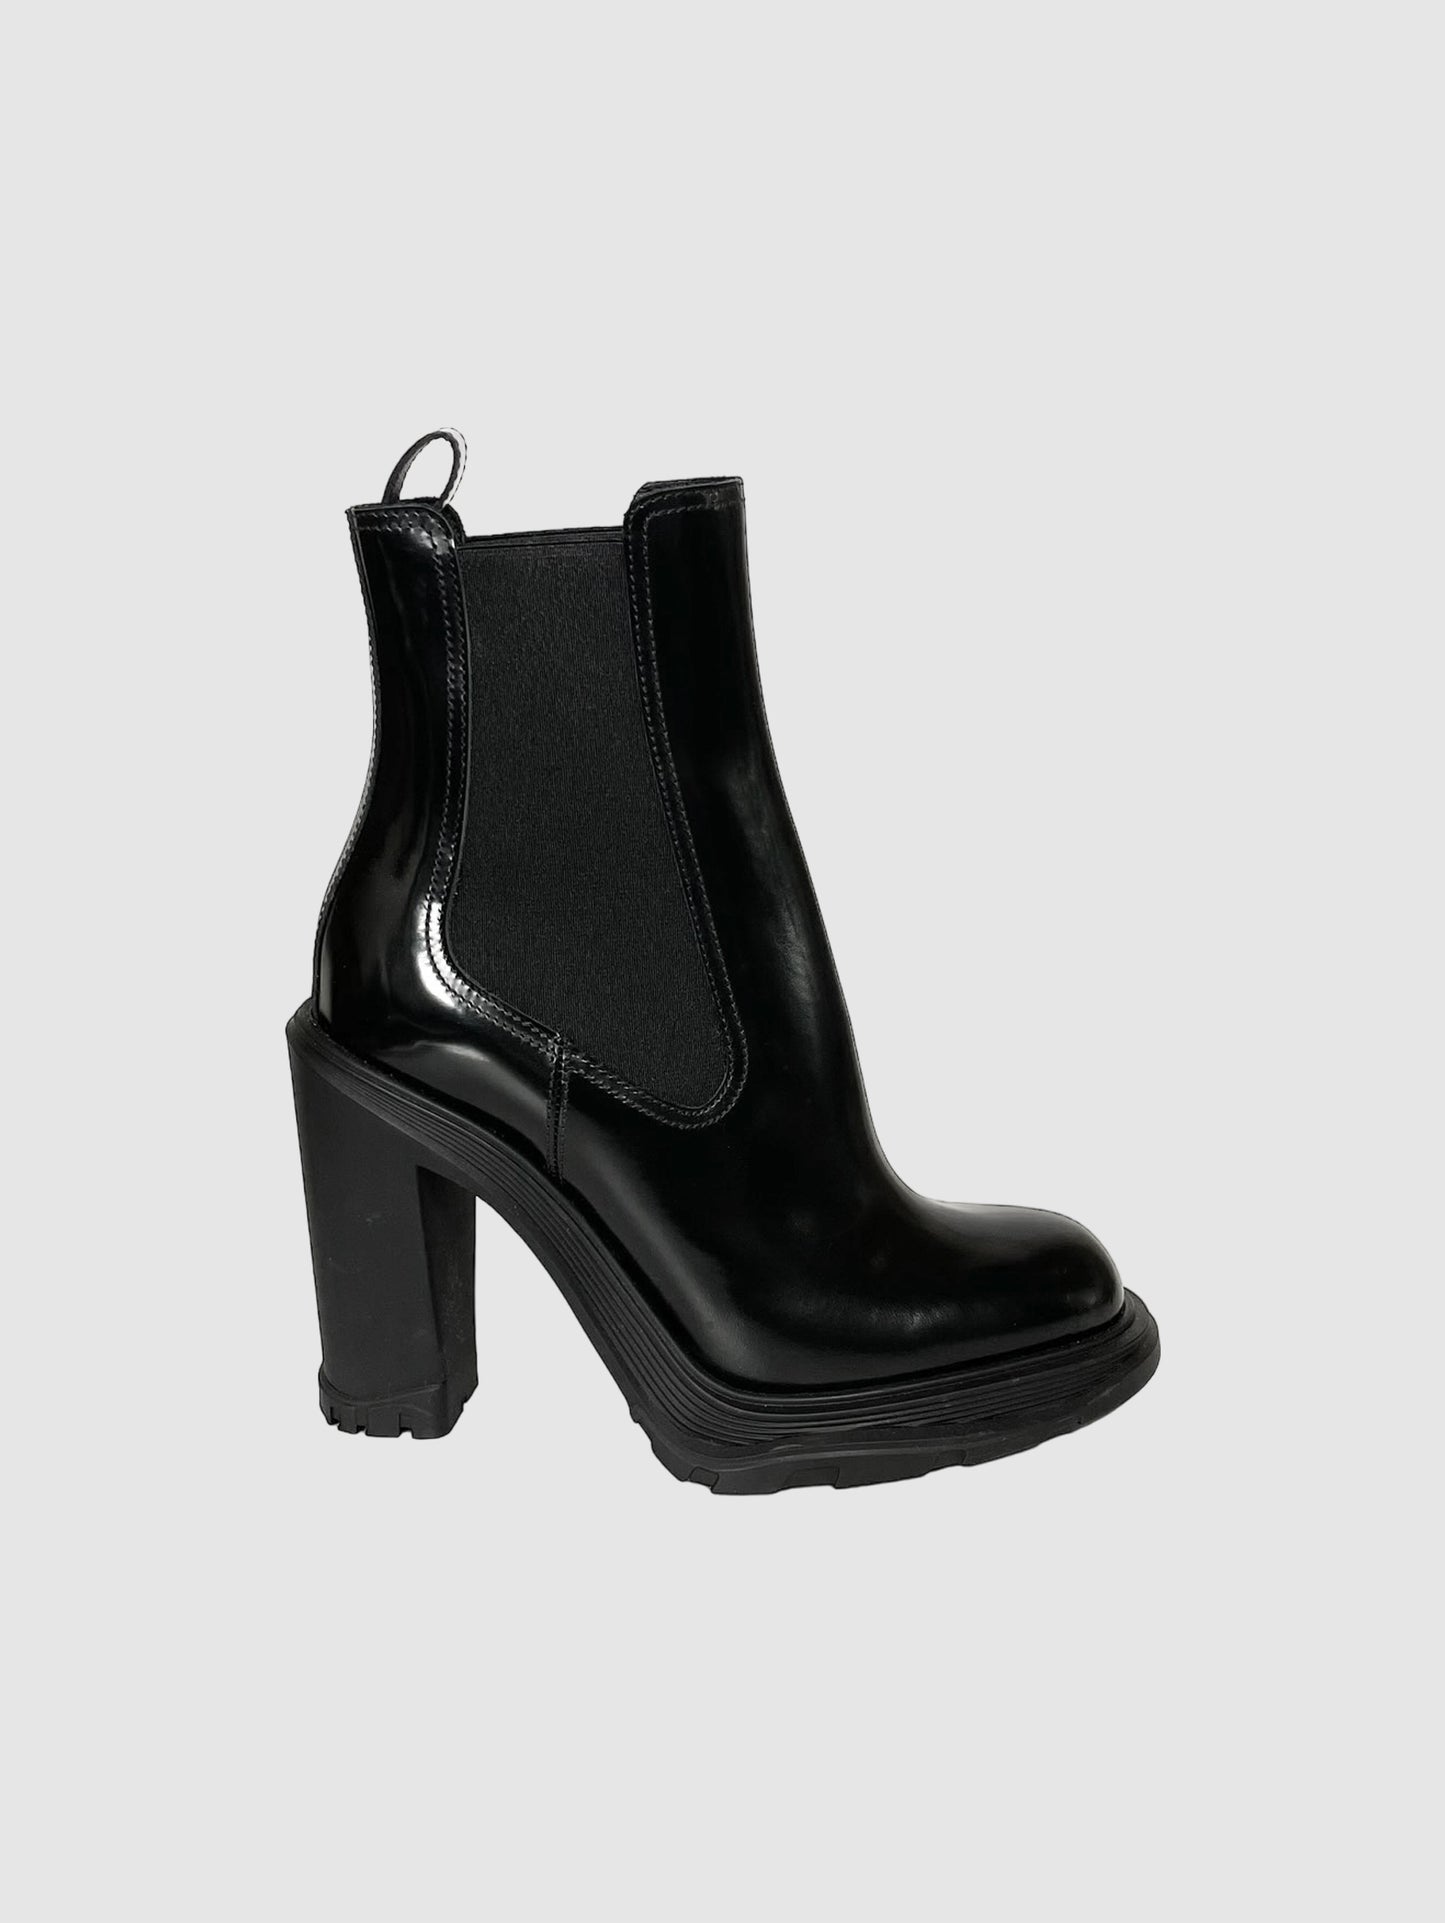 Alexander McQueen Tread Heeled Chelsea Boots - Size 37.5